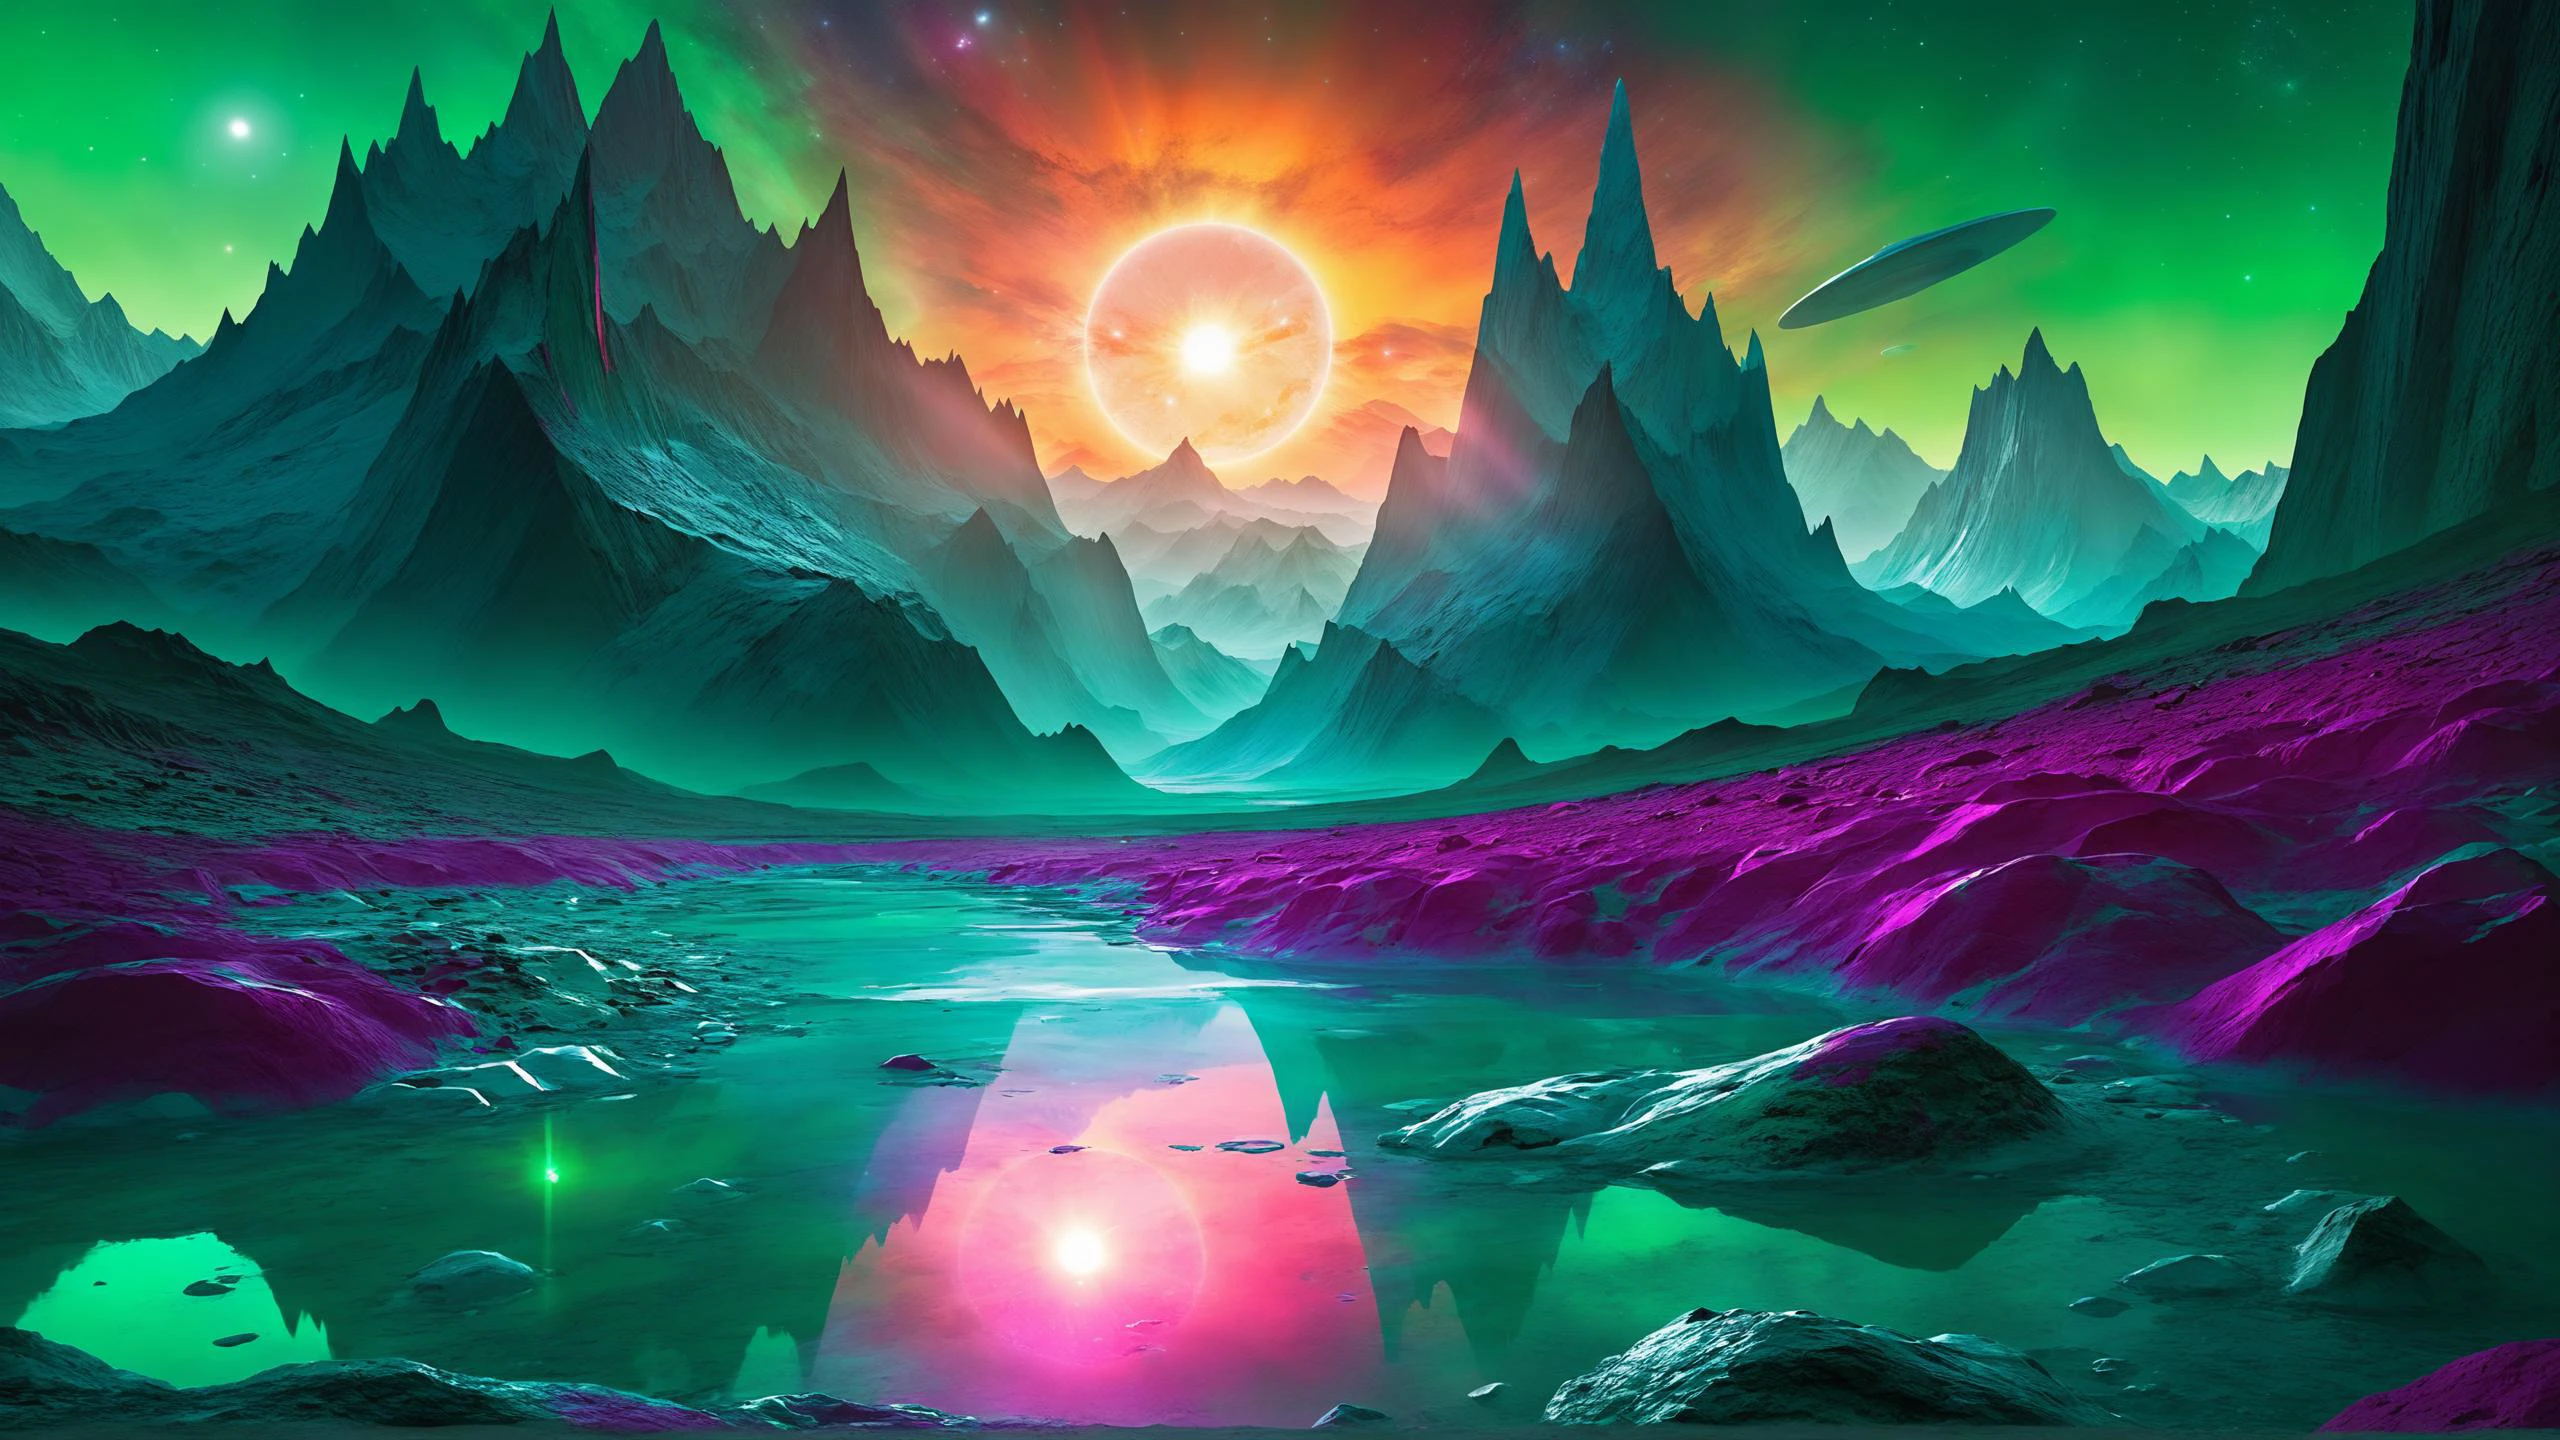 外星人 landscape, Glacial formations reflecting the 外星人 sun, 翠绿山谷坐落在高耸的山脉之间 , 外星人 [弗洛拉:動物群:0.5], 電影燈光, 绚丽夺目的鲜艳油漆, 